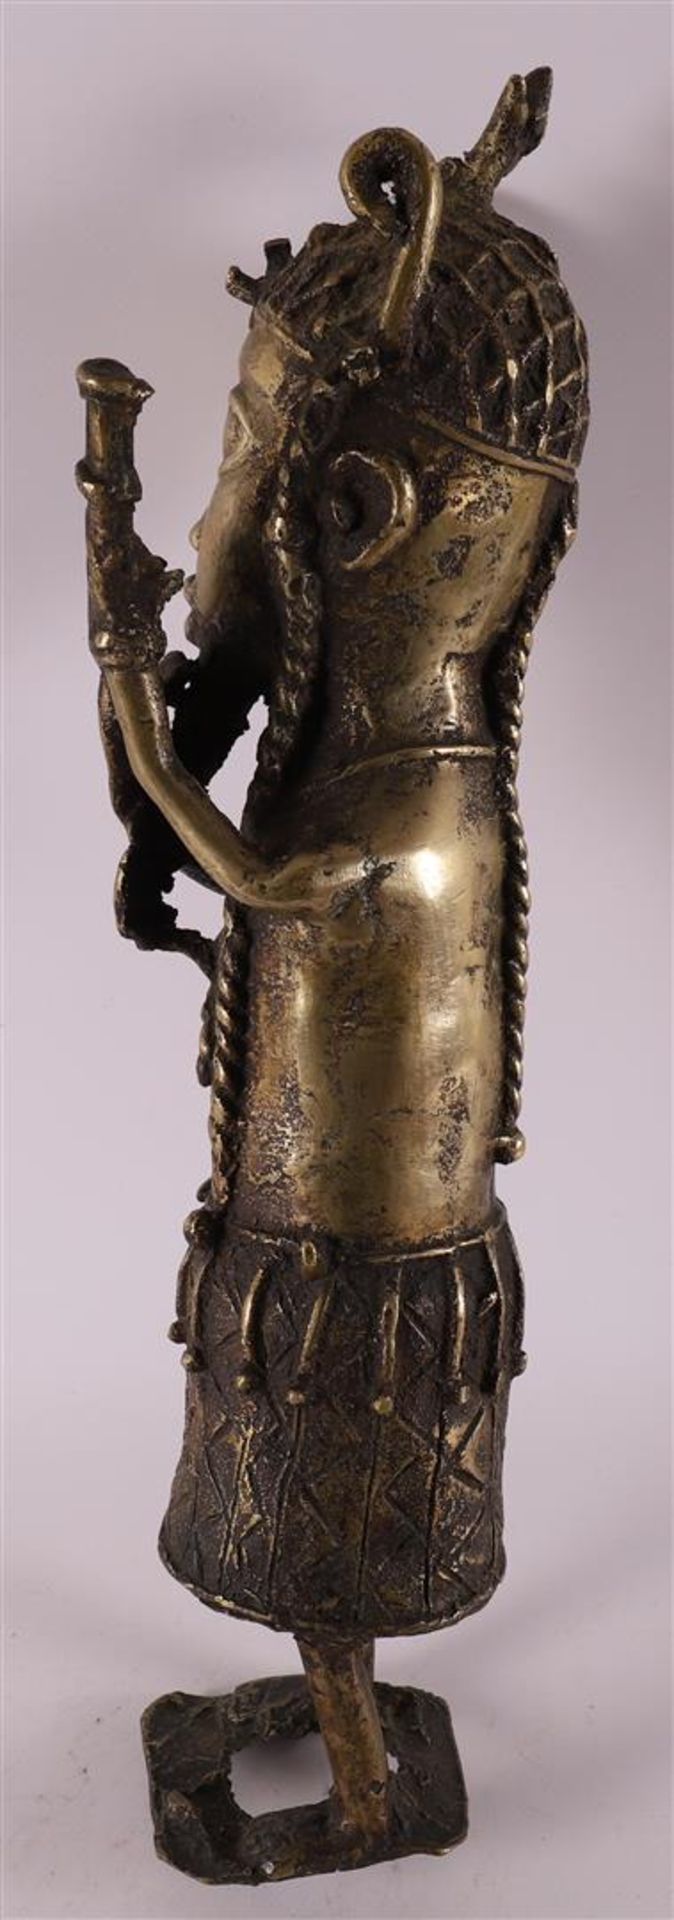 A Benin bronze of musician, Africa, Nigeria, 20th/21st century. - Bild 3 aus 4